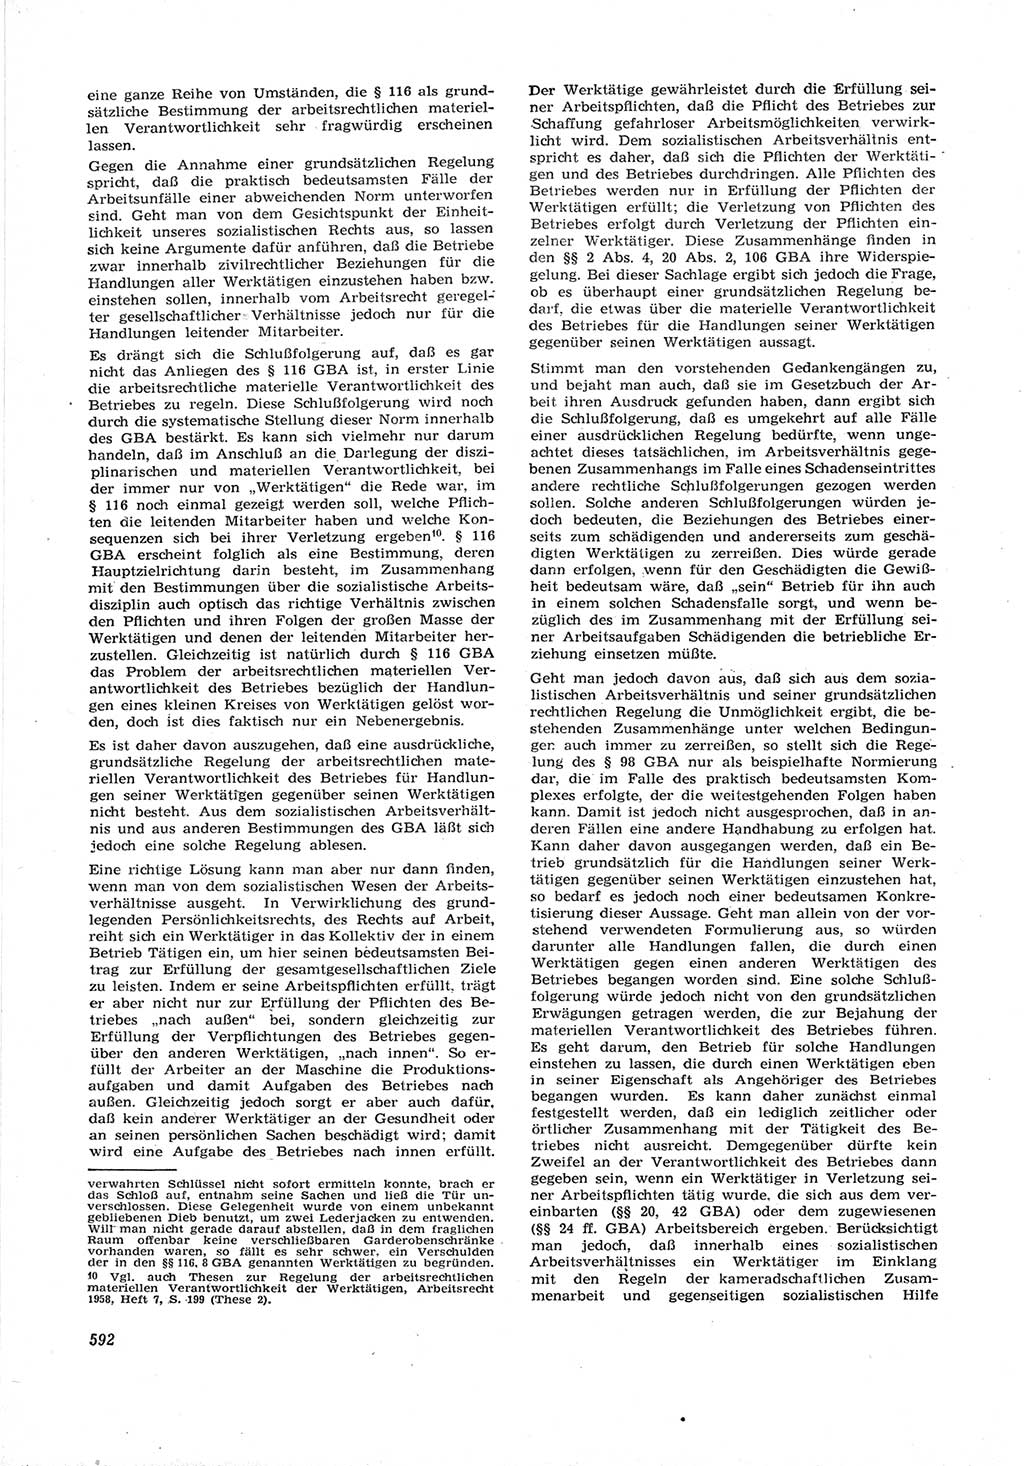 Neue Justiz (NJ), Zeitschrift für Recht und Rechtswissenschaft [Deutsche Demokratische Republik (DDR)], 17. Jahrgang 1963, Seite 592 (NJ DDR 1963, S. 592)